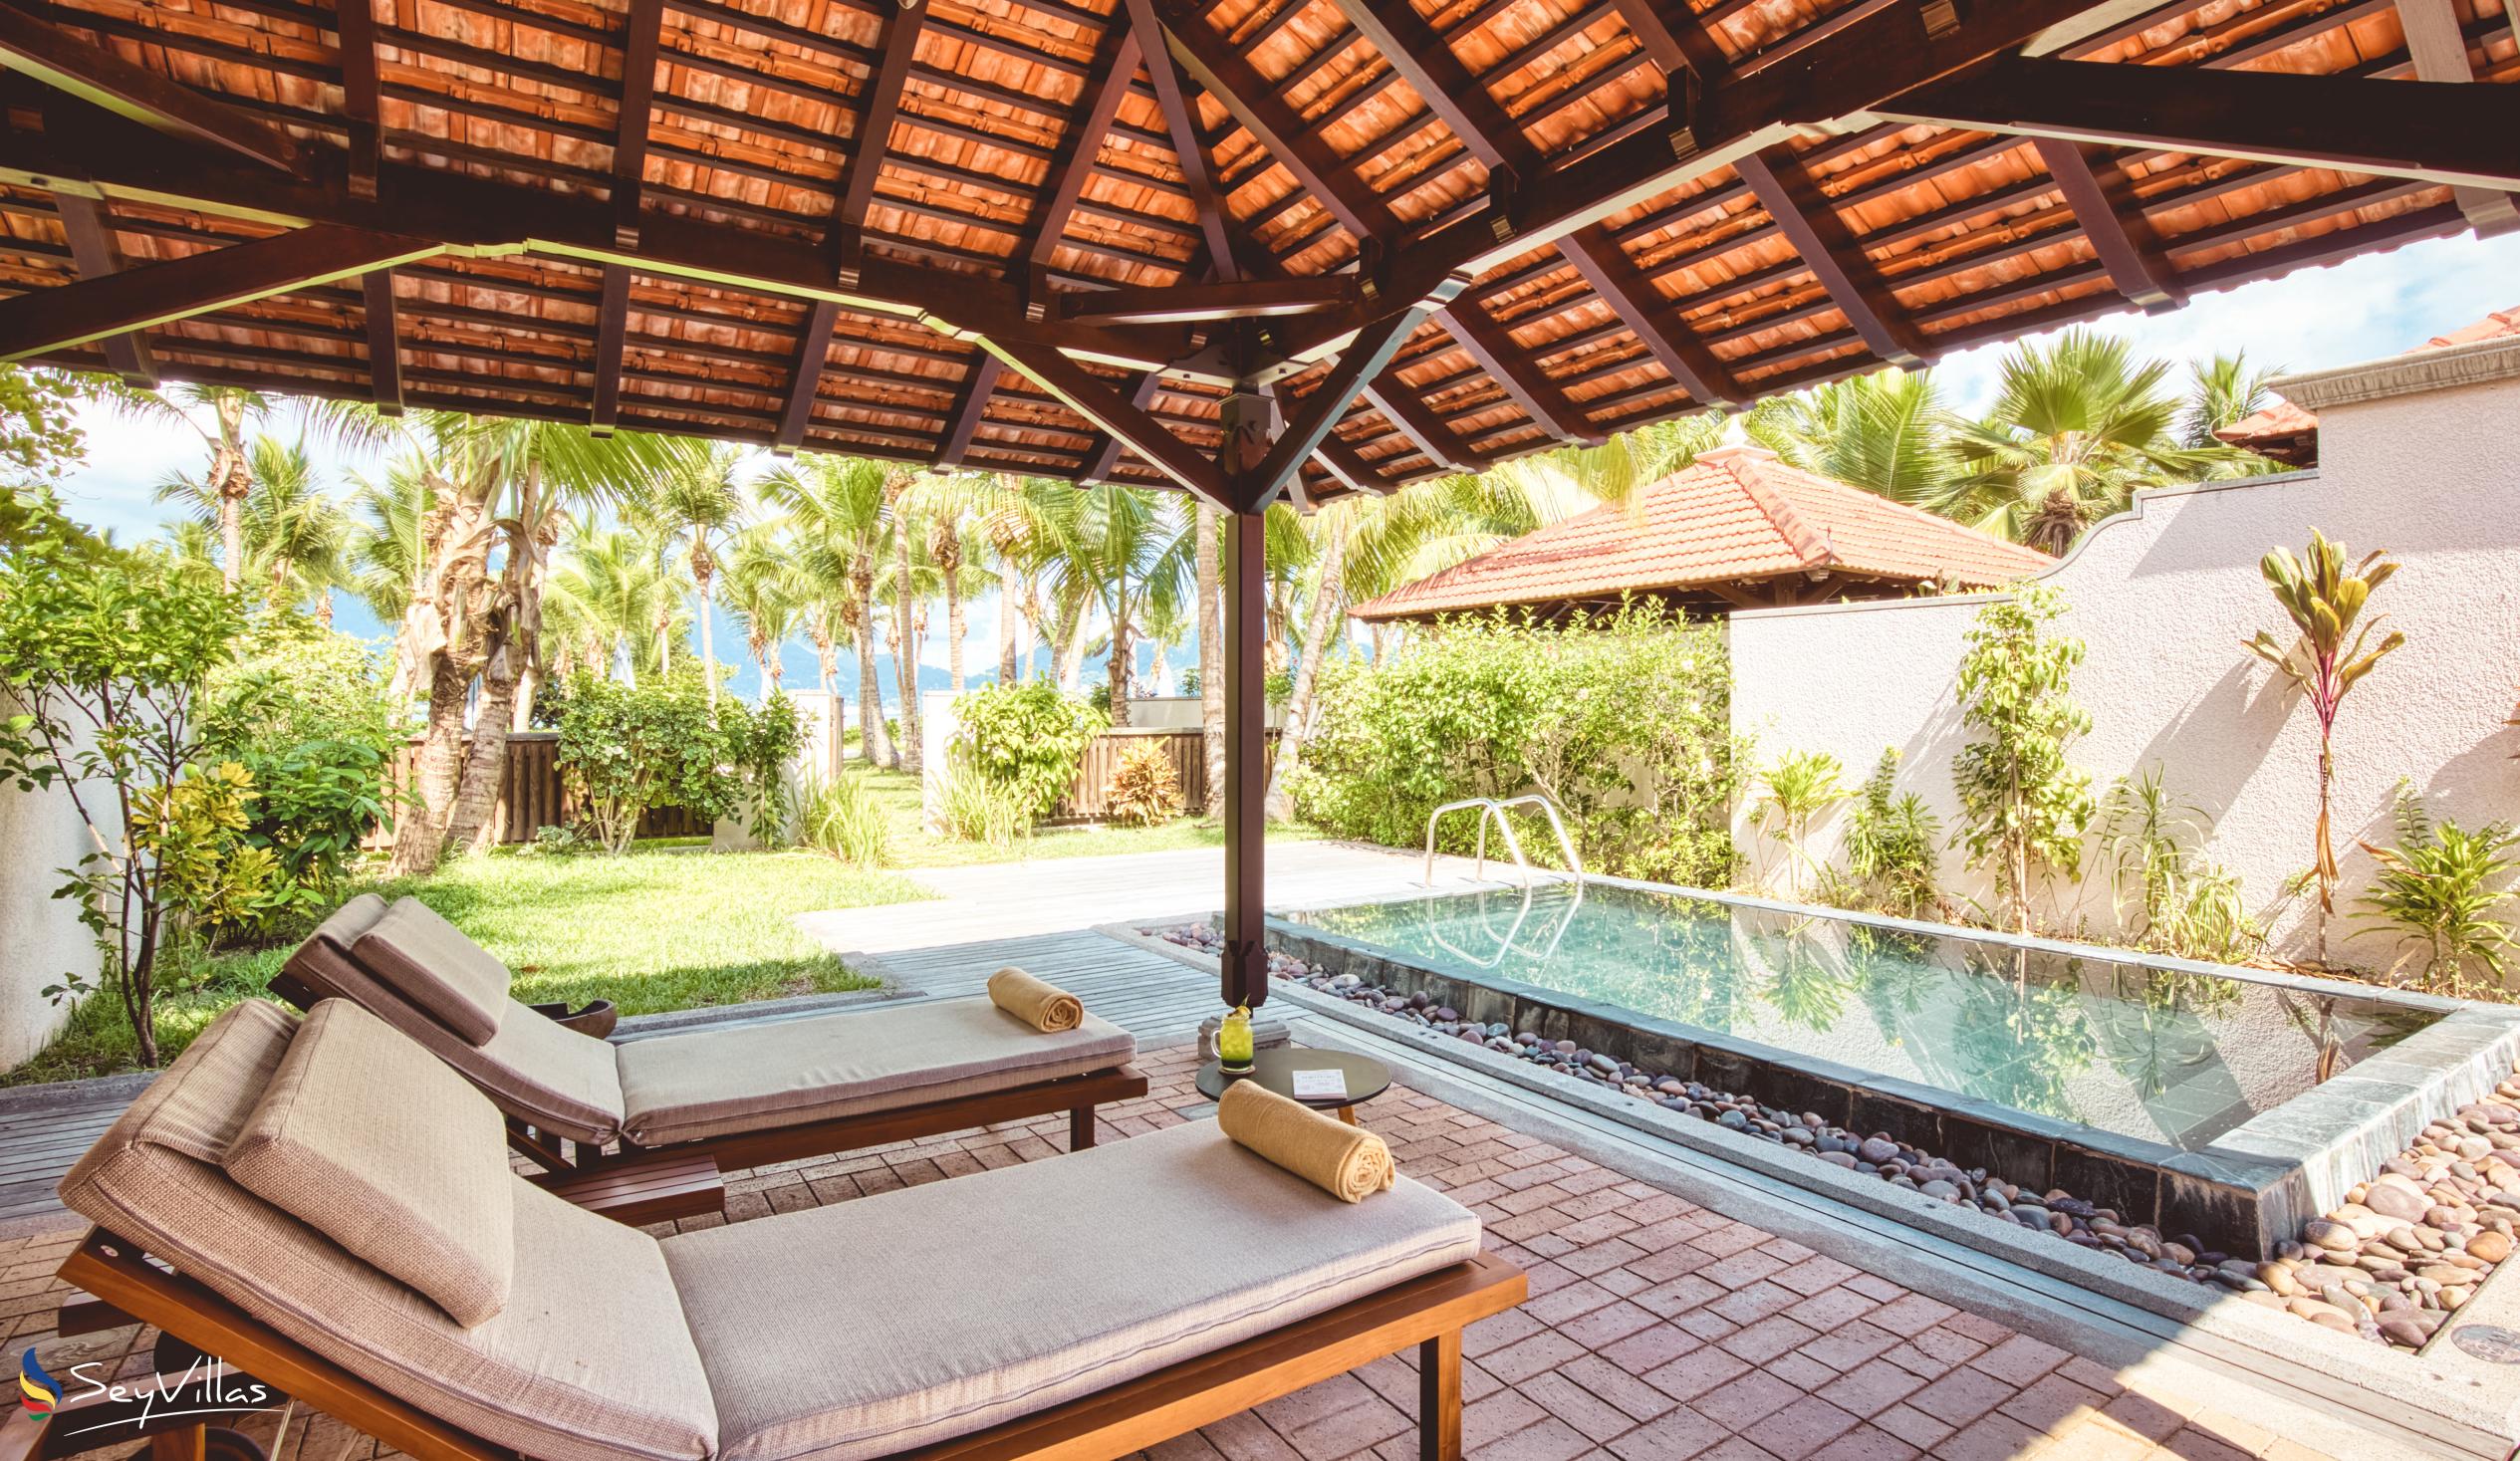 Foto 121: Club Med Seychelles - Junior Suite avec vue sur la mer et piscine privée - Saint Anne (Seychelles)